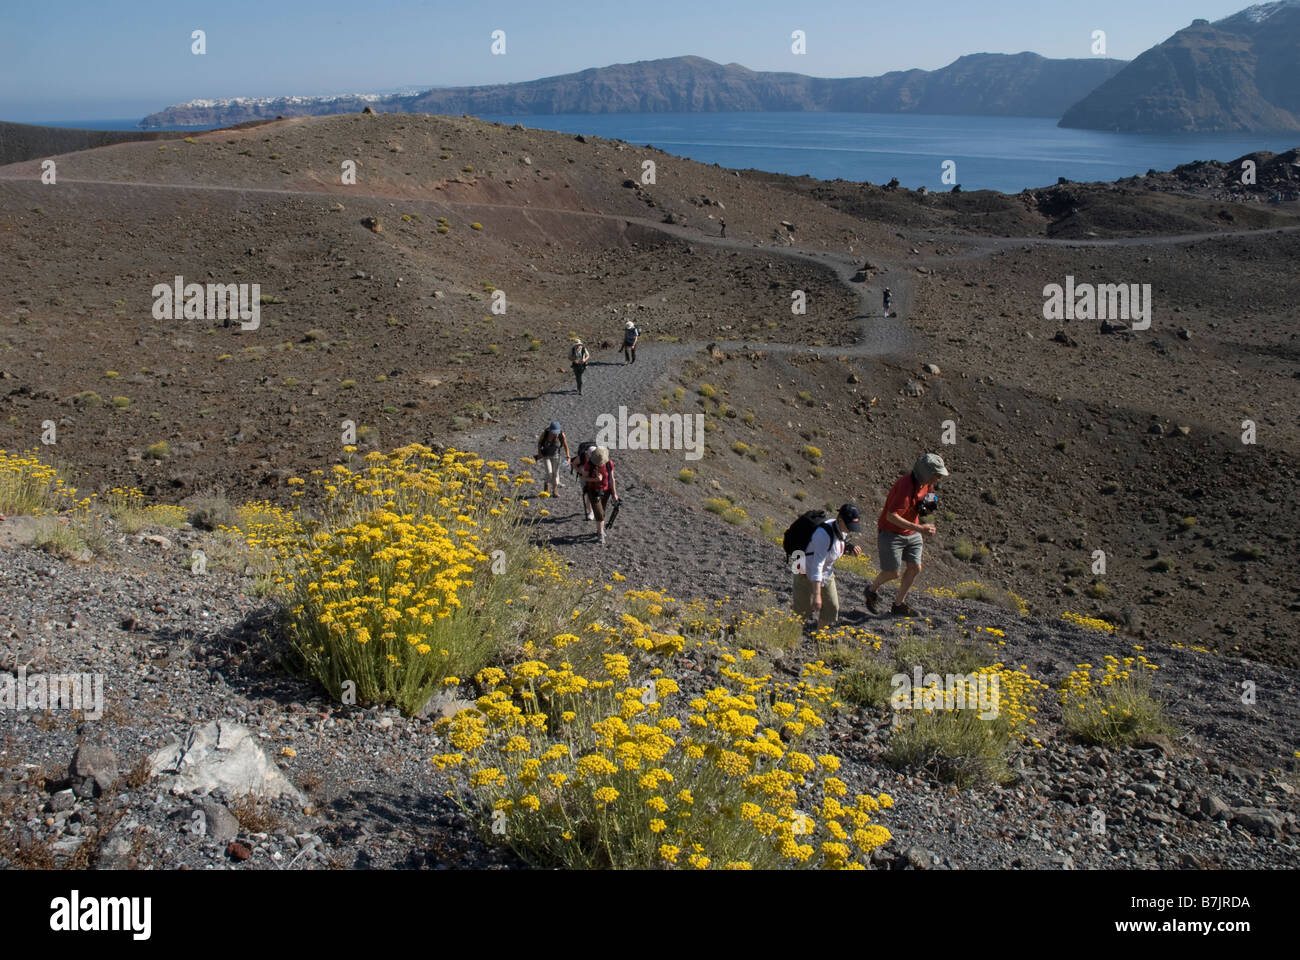 Grecia SANTORINI, Nea Kameni. I turisti del trekking su Nea Kameni, una piccola disabitata isola vulcanica nella baia di Santorini Foto Stock